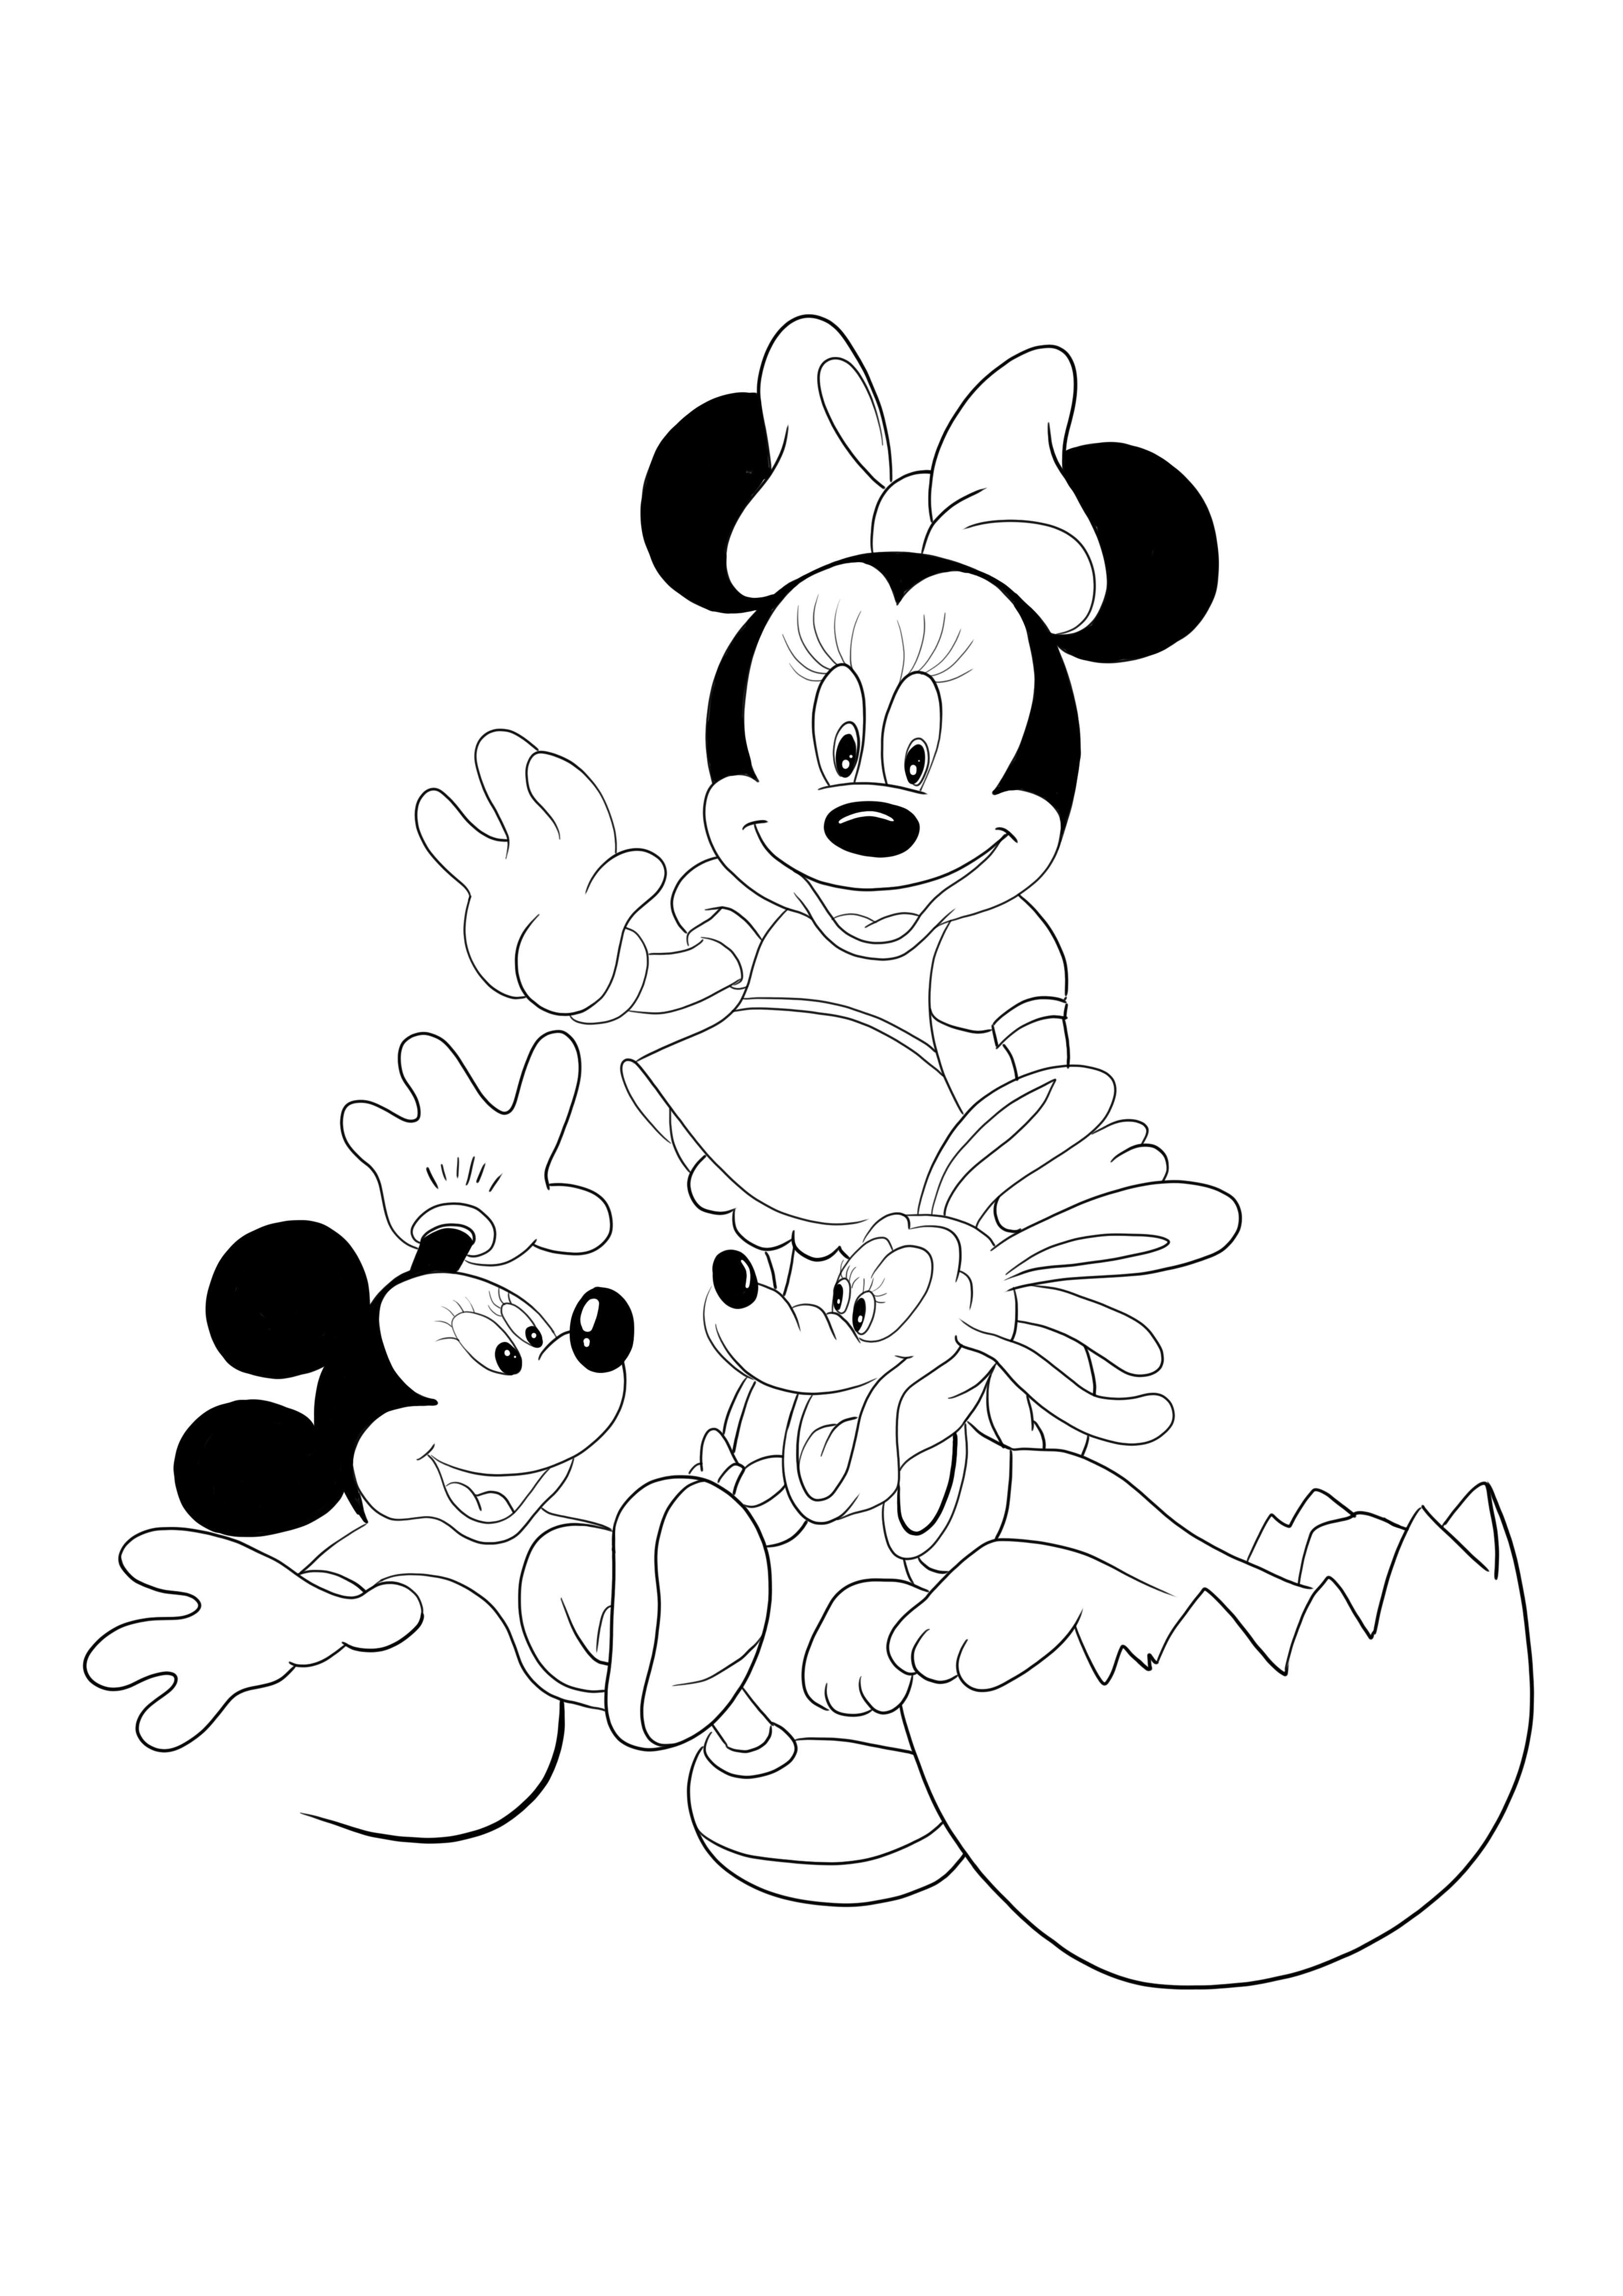 Minnie y Mickey para imprimir y colorear gratis para niños de todas las edades